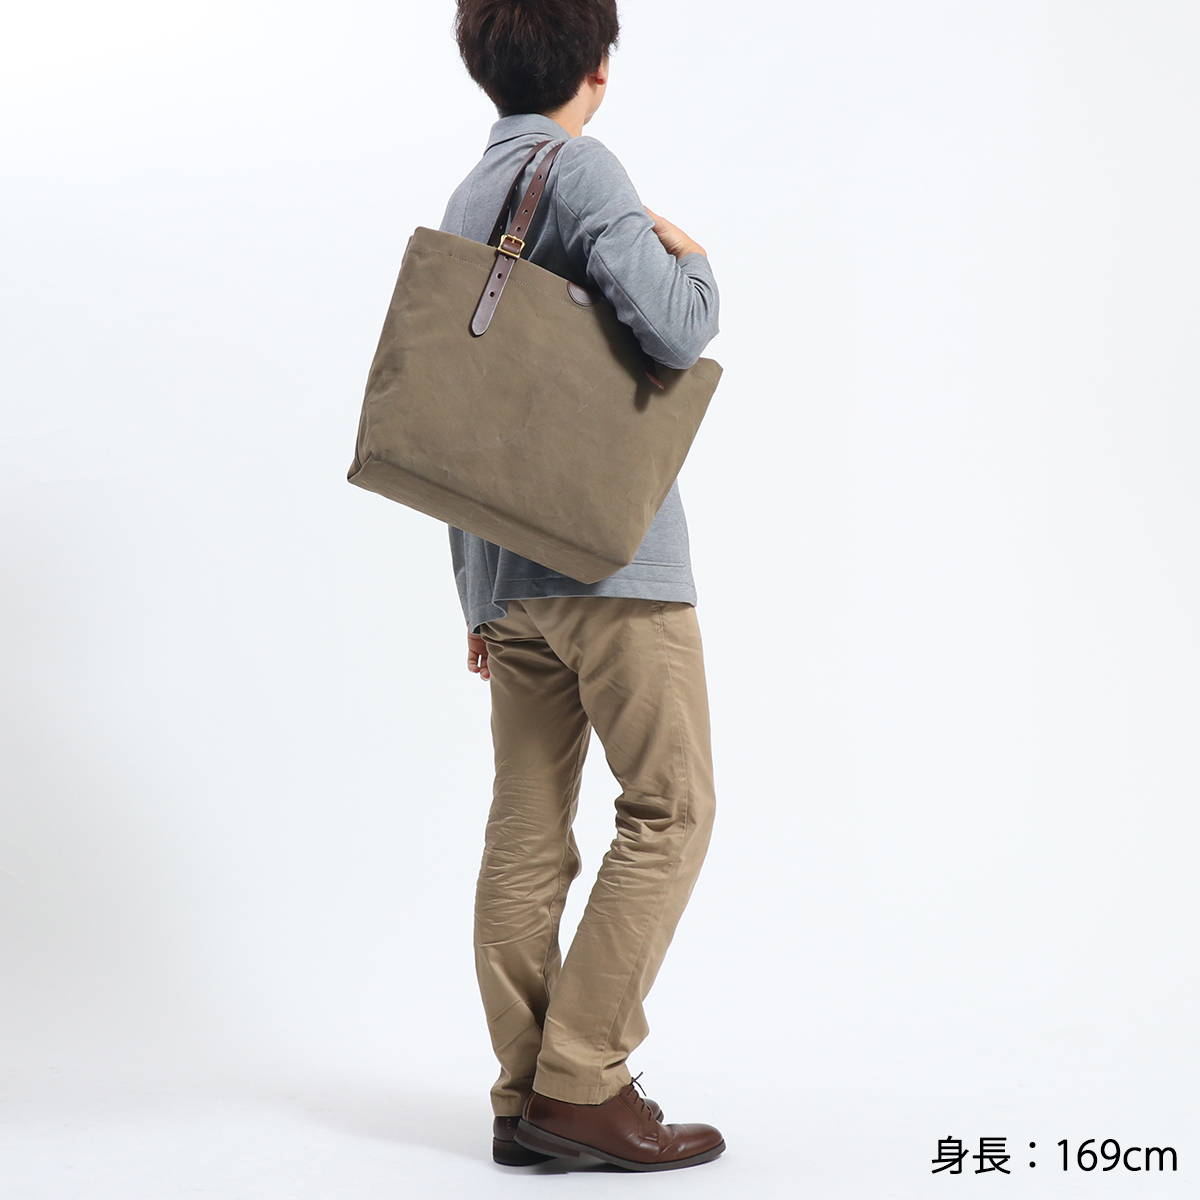 SLOW スロウ tote bag L トートバッグ 49S215I｜【正規販売店】カバン